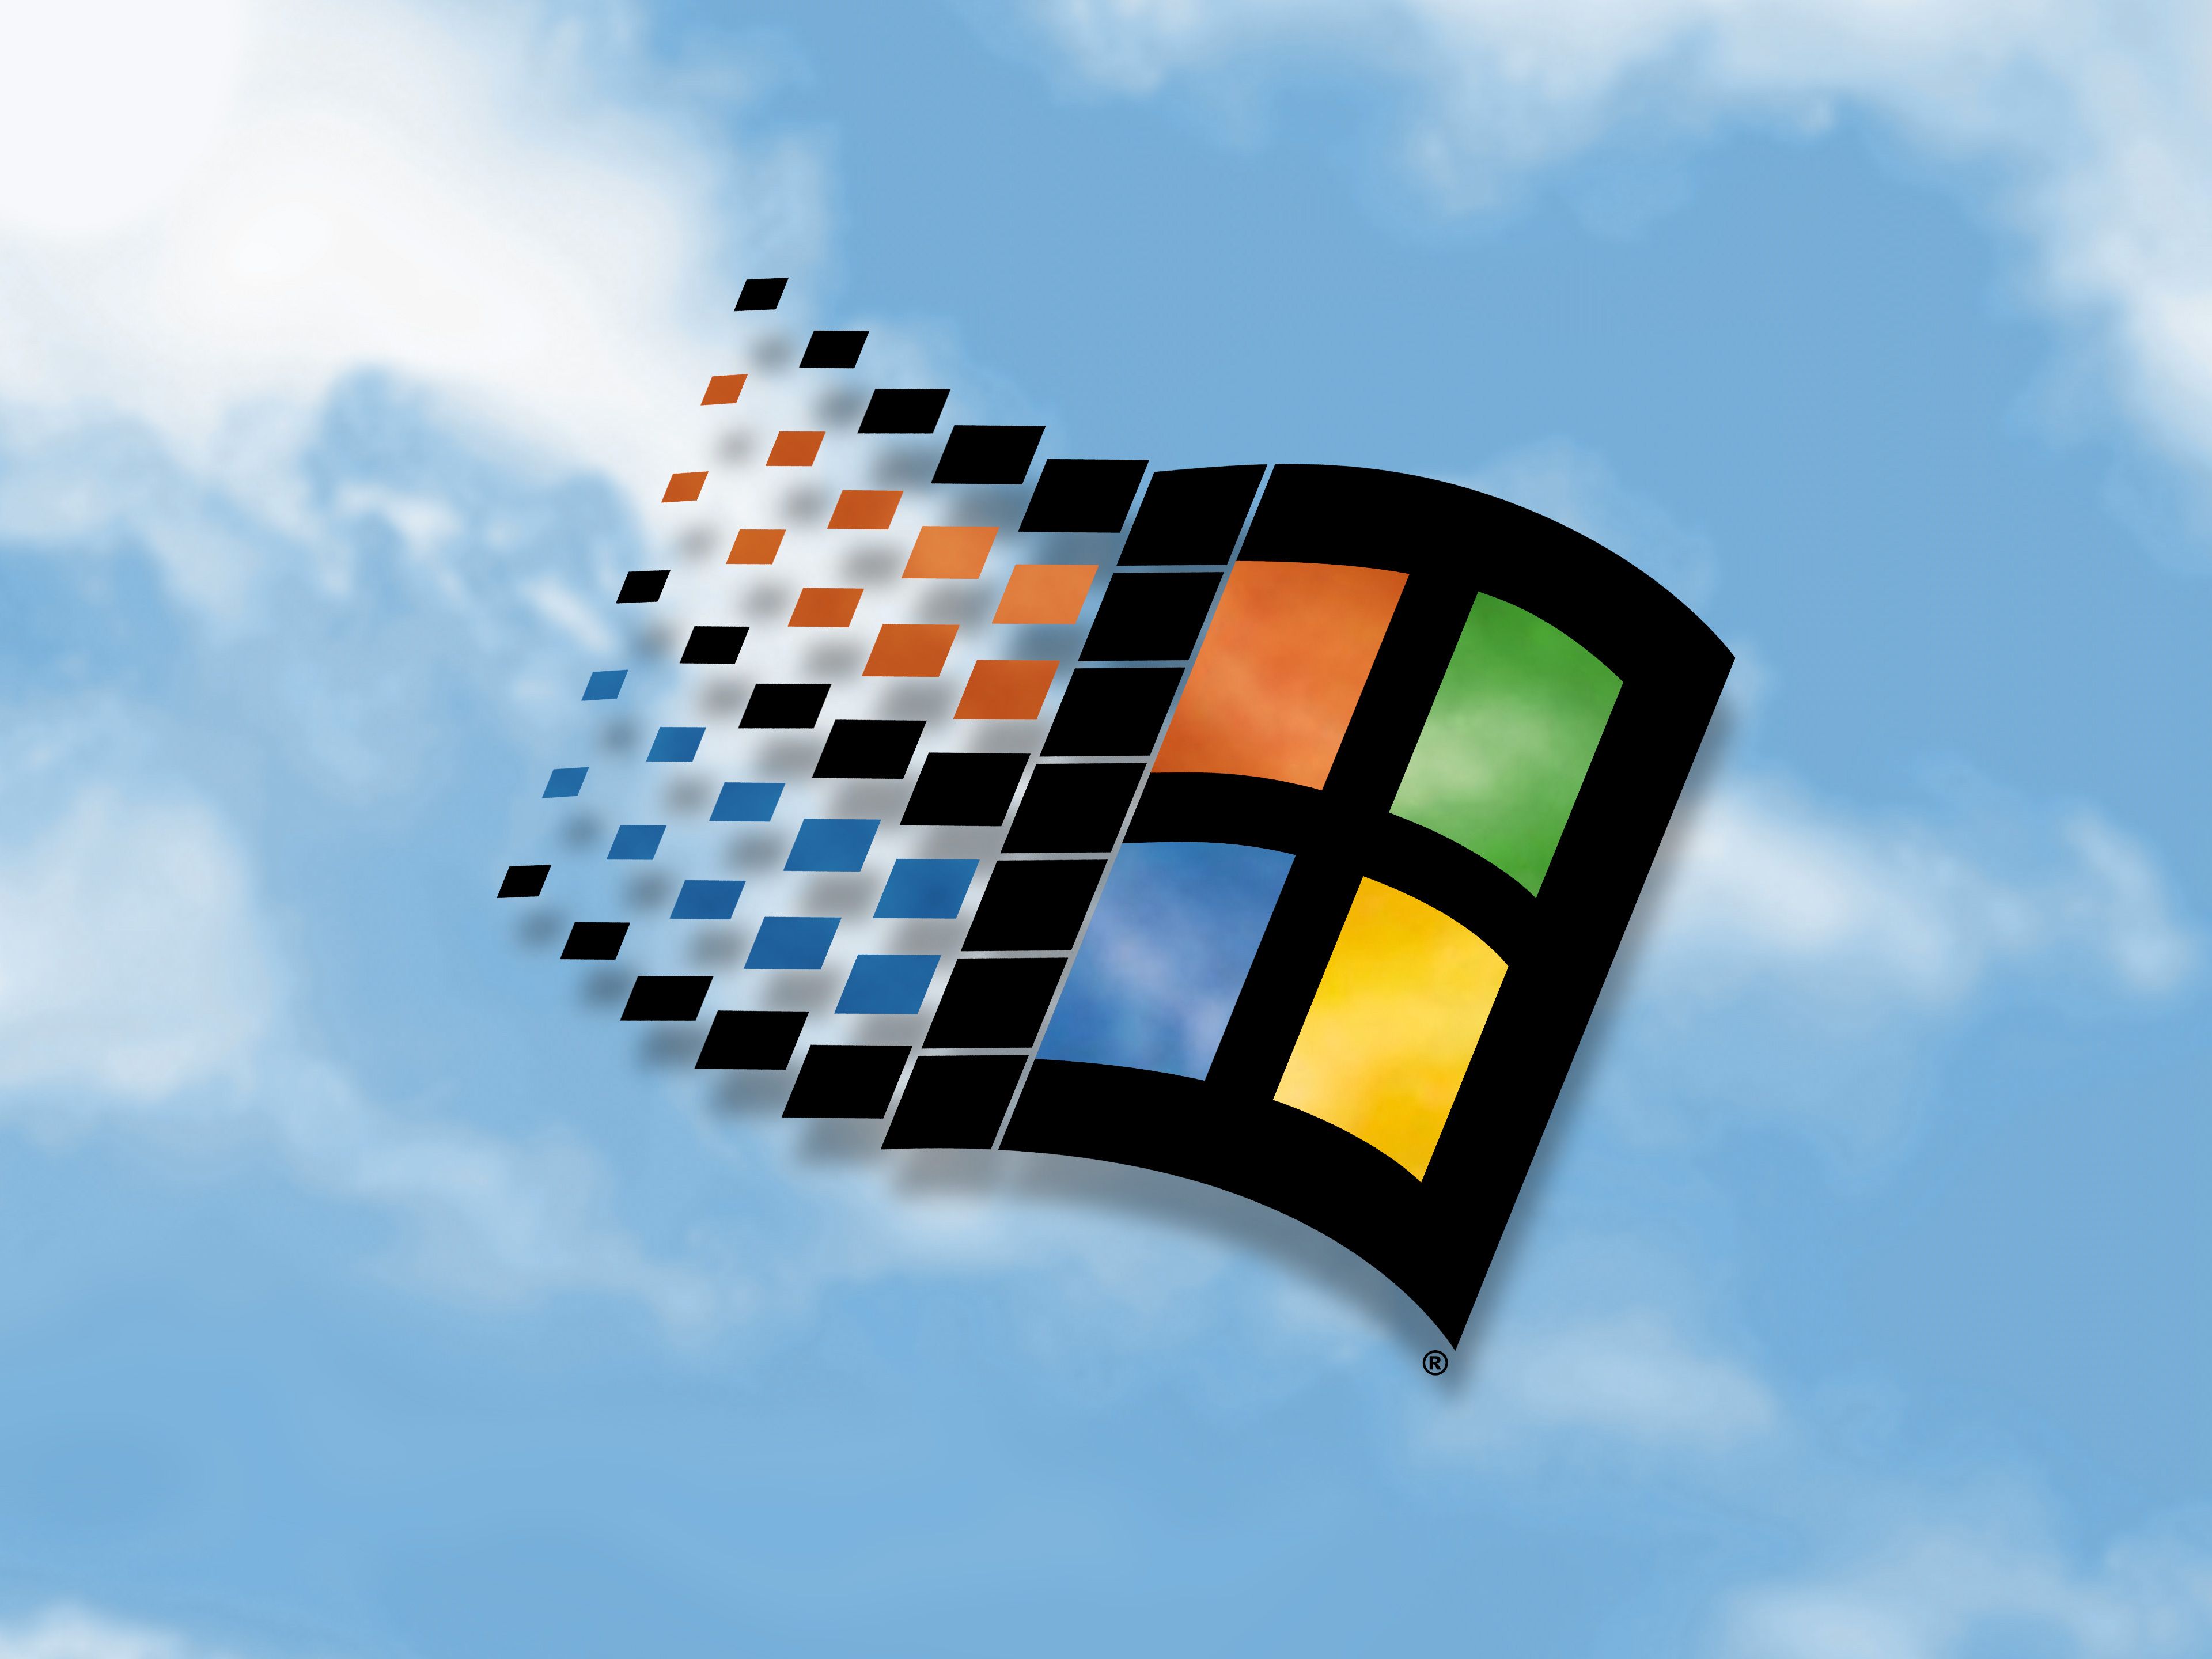 Windows 98 Clouds là một bức tranh nền nổi tiếng thể hiện sự đẹp mê hoặc của mây trời. Với kích thước HD và chất lượng độ phân giải cao, ảnh của Ryan Mercado sẽ mang lại không gian vô cùng yên bình và hạnh phúc cho màn hình máy tính của bạn.